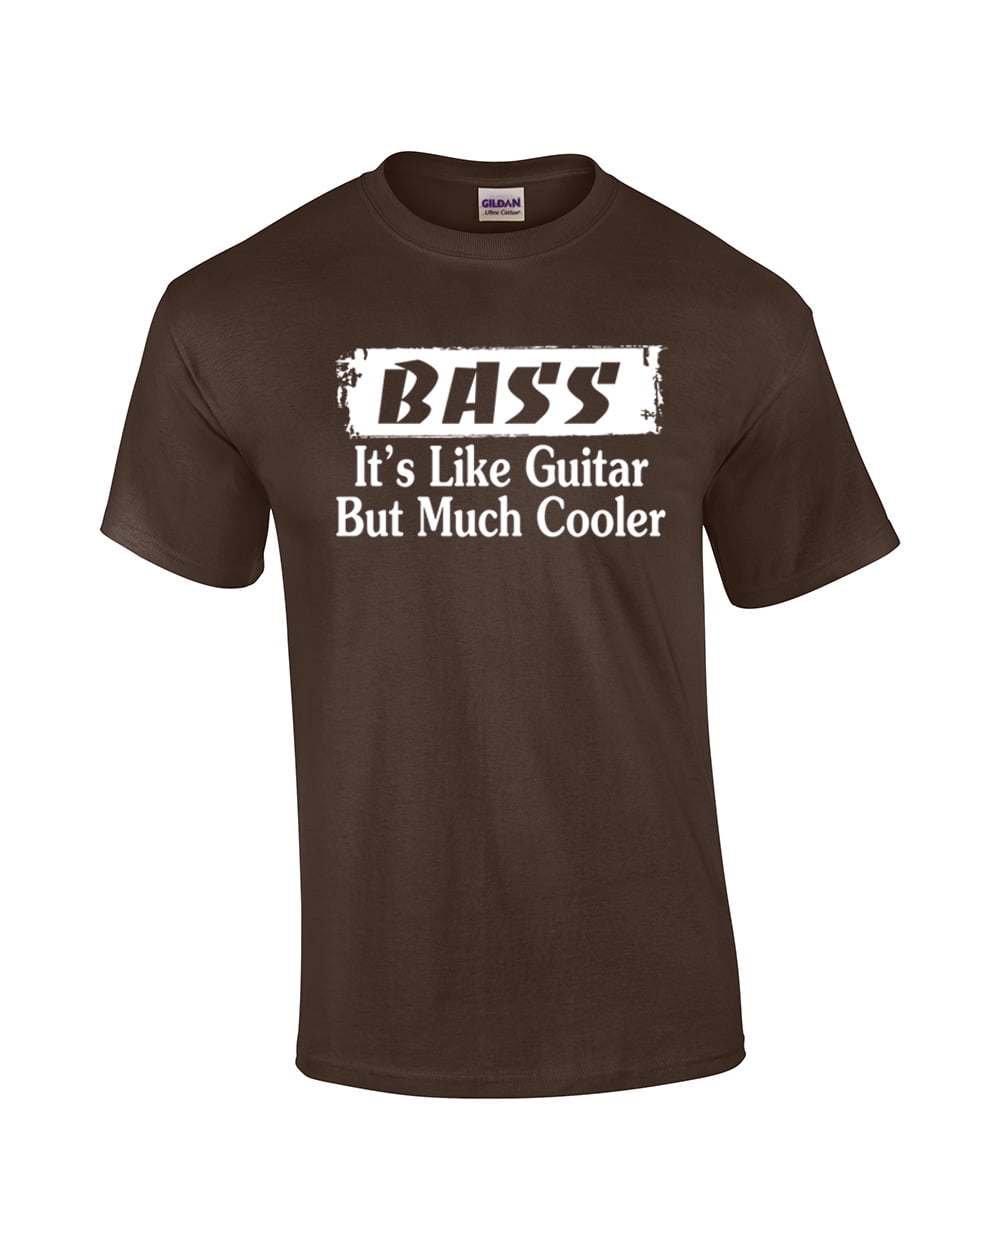 Bass Guitar Tshirt Bass It's Like Guitar But Cooler T-Shirt for Men Women 